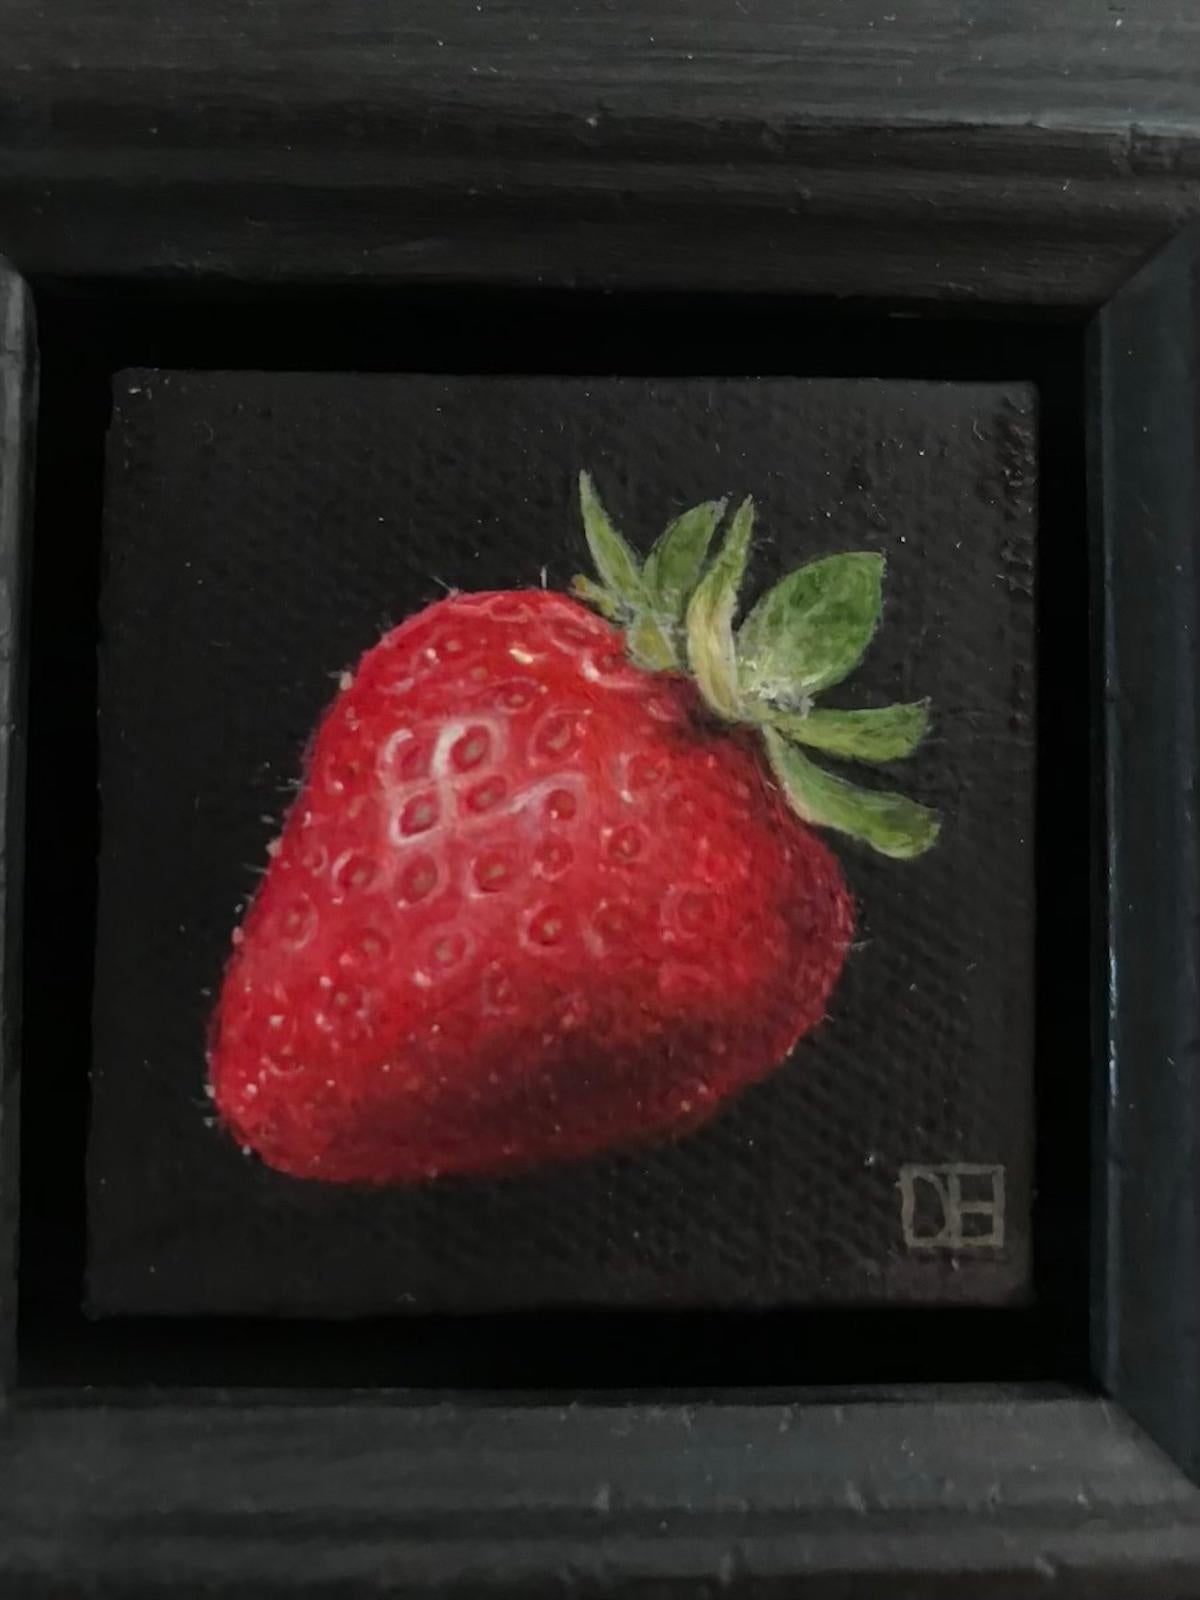 Pocket Strawberry par Dani Humberstone [2022]
original et signé à la main par l'artiste 
Huile sur toile
Taille de l'image : H:5 cm x L:5 cm
Taille complète de l'œuvre non encadrée : H:5 cm x L:5 cm x P:2cm
Taille du cadre : H:15 cm x L:15 cm x